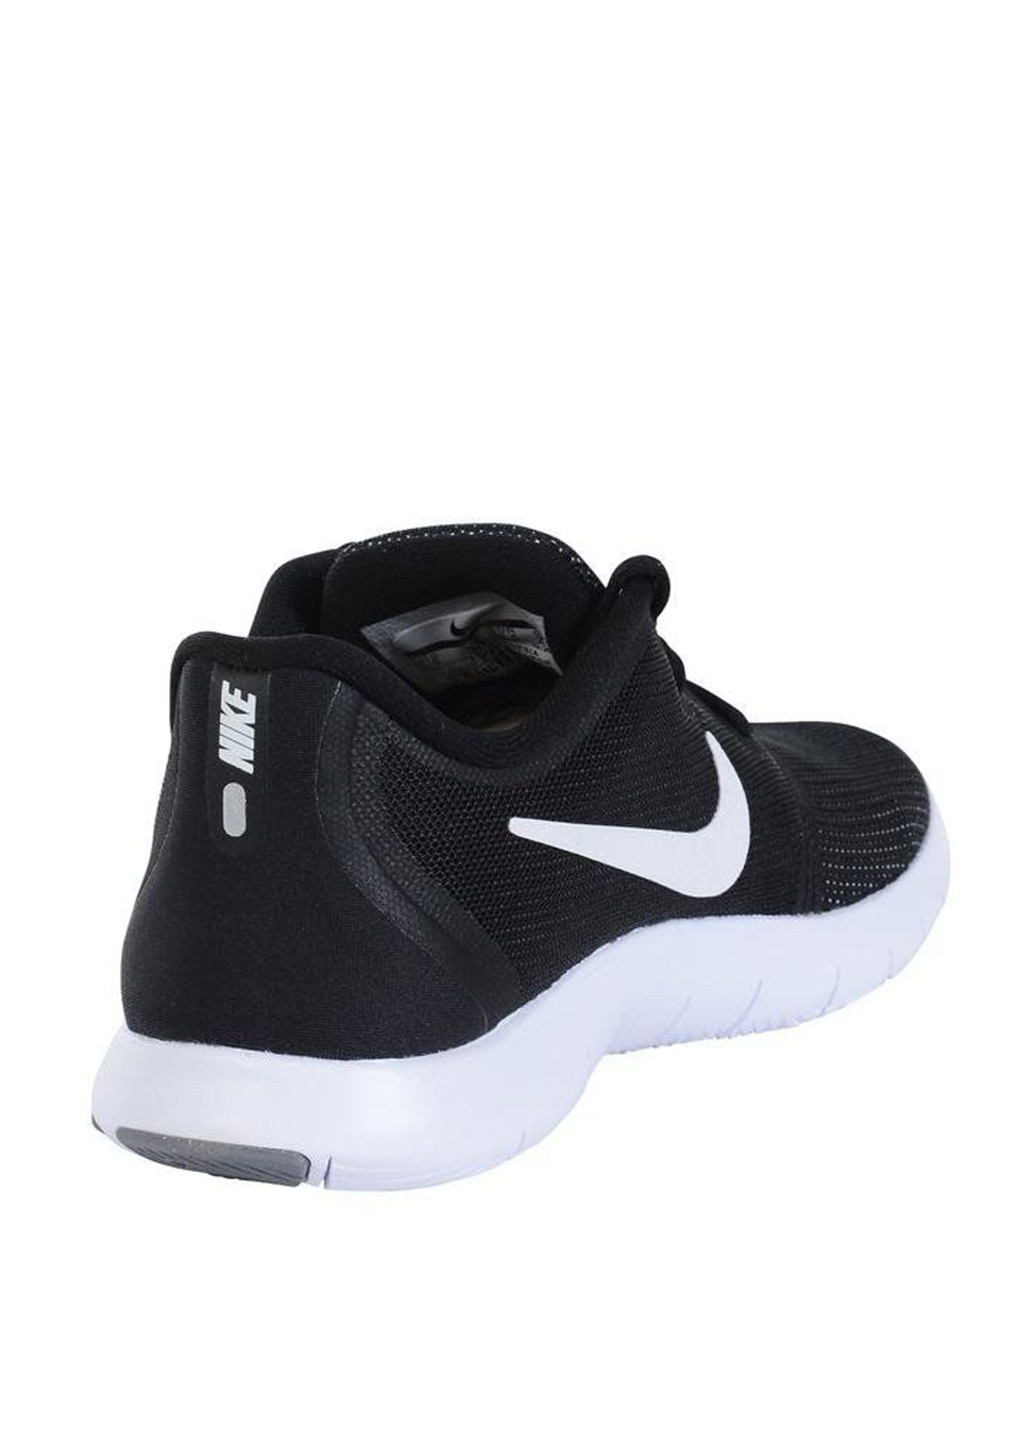 Черные демисезонные кроссовки Nike WMNS NIKE FLEX CONTACT 2 AS